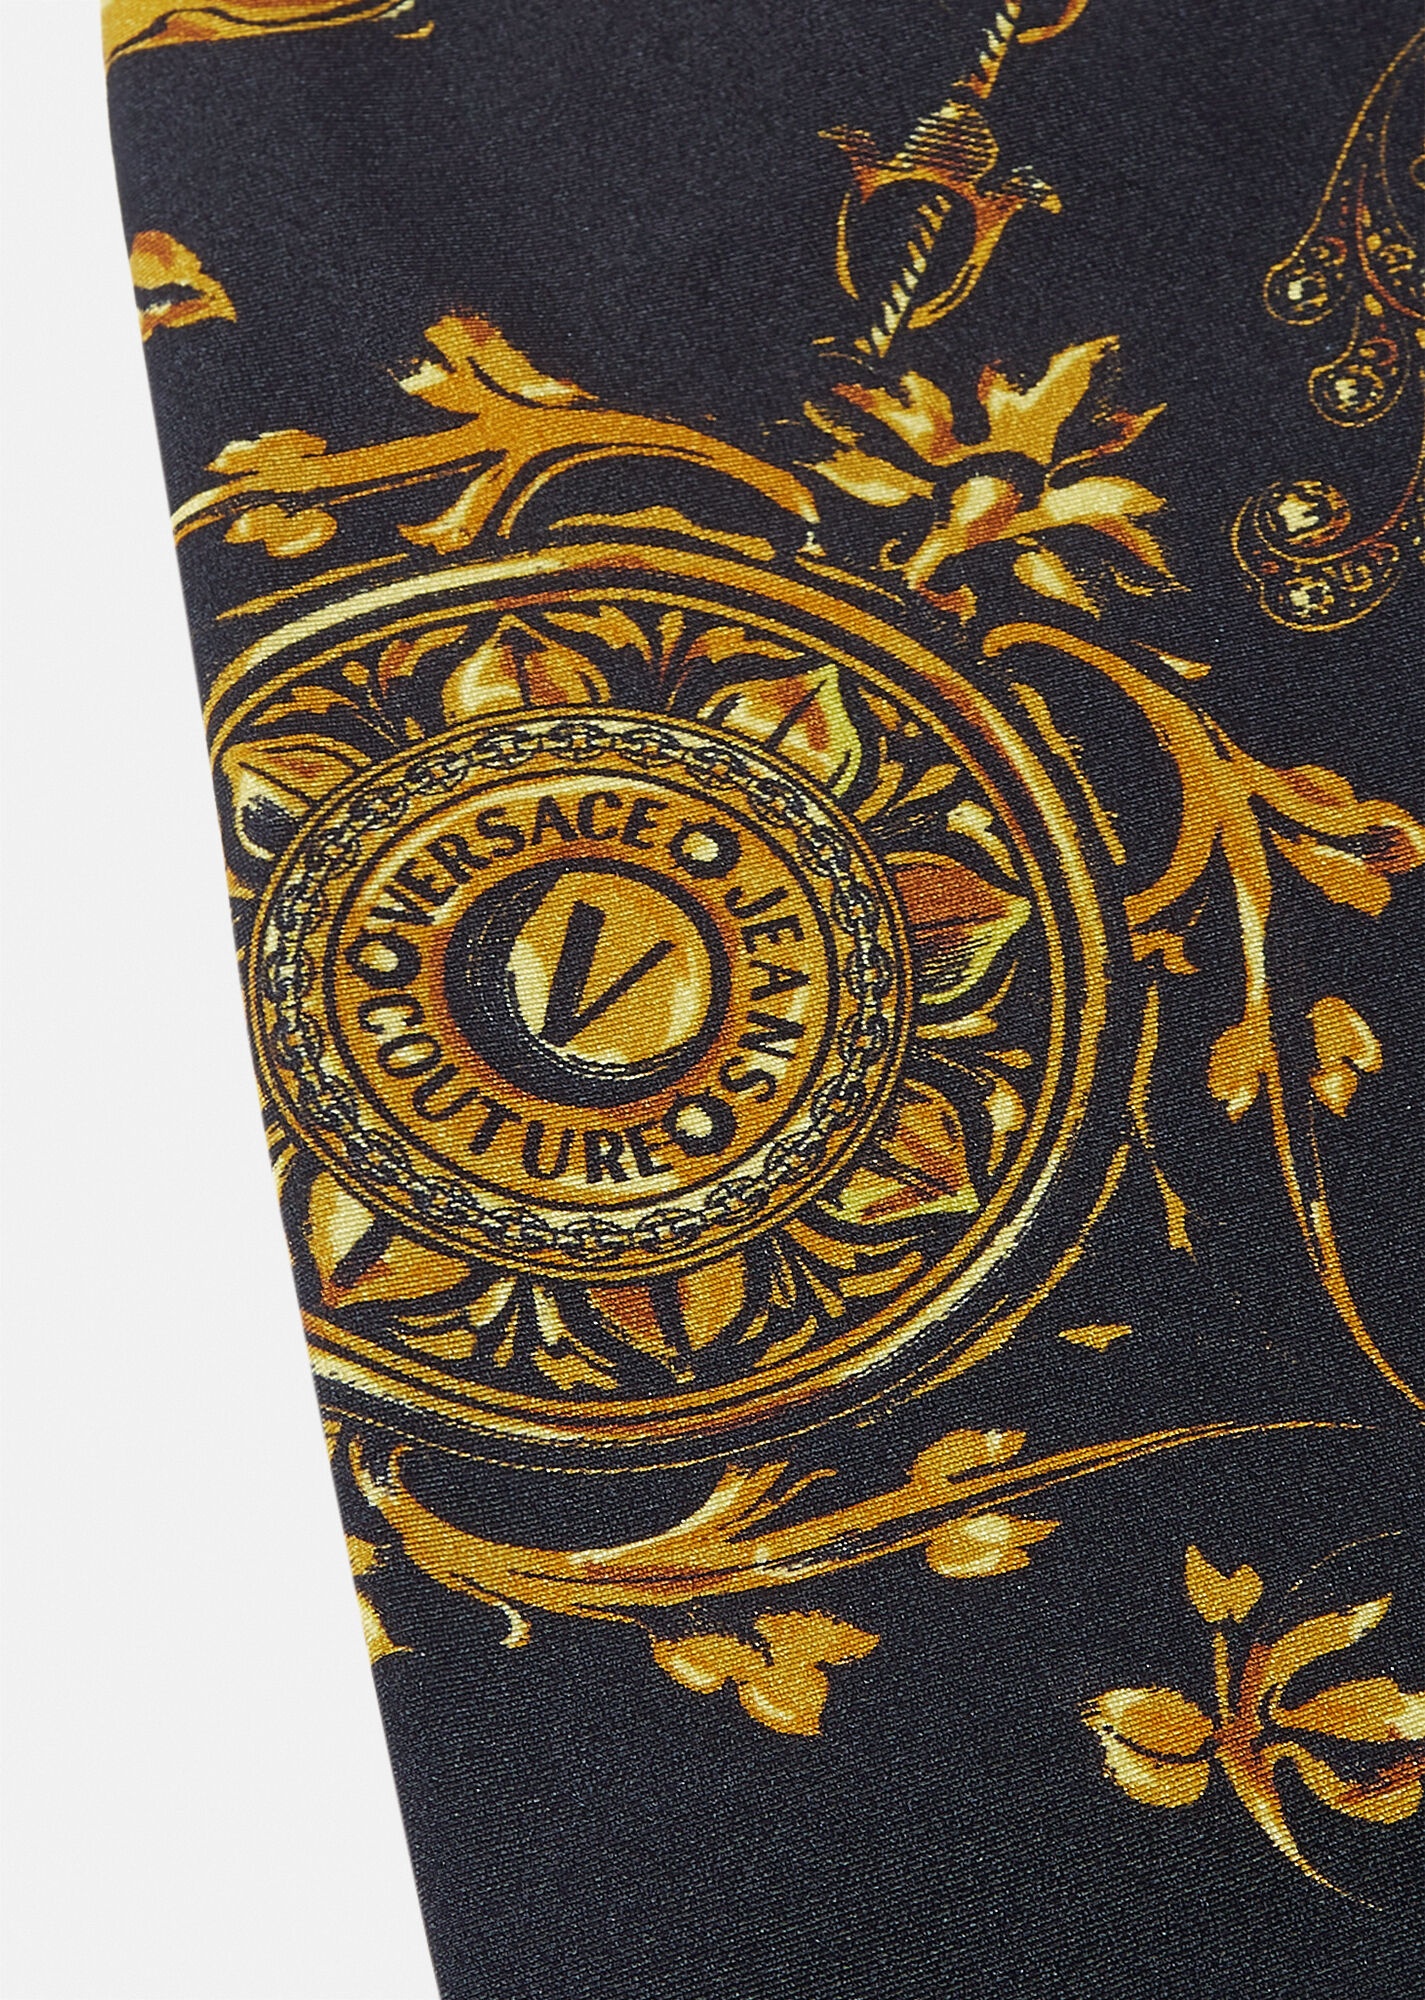 Regalia Baroque print shorts - 4